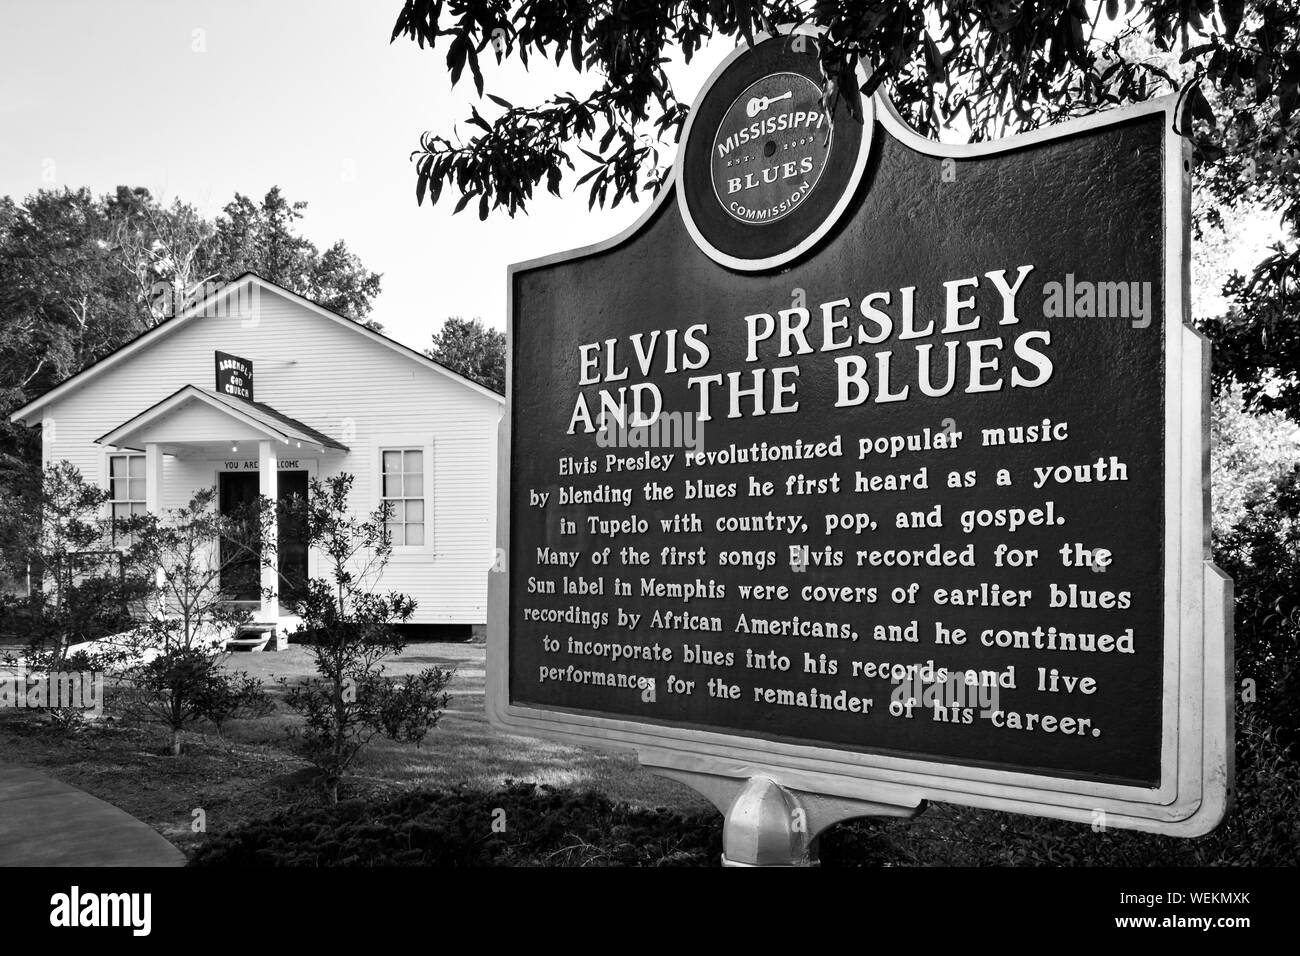 La Mississippi Blues Commission repère historique pour Elvis Presley et les bleus, près de l'église, l'enfance d'Elvis sur le terrain de l'Elvis Presley Banque D'Images